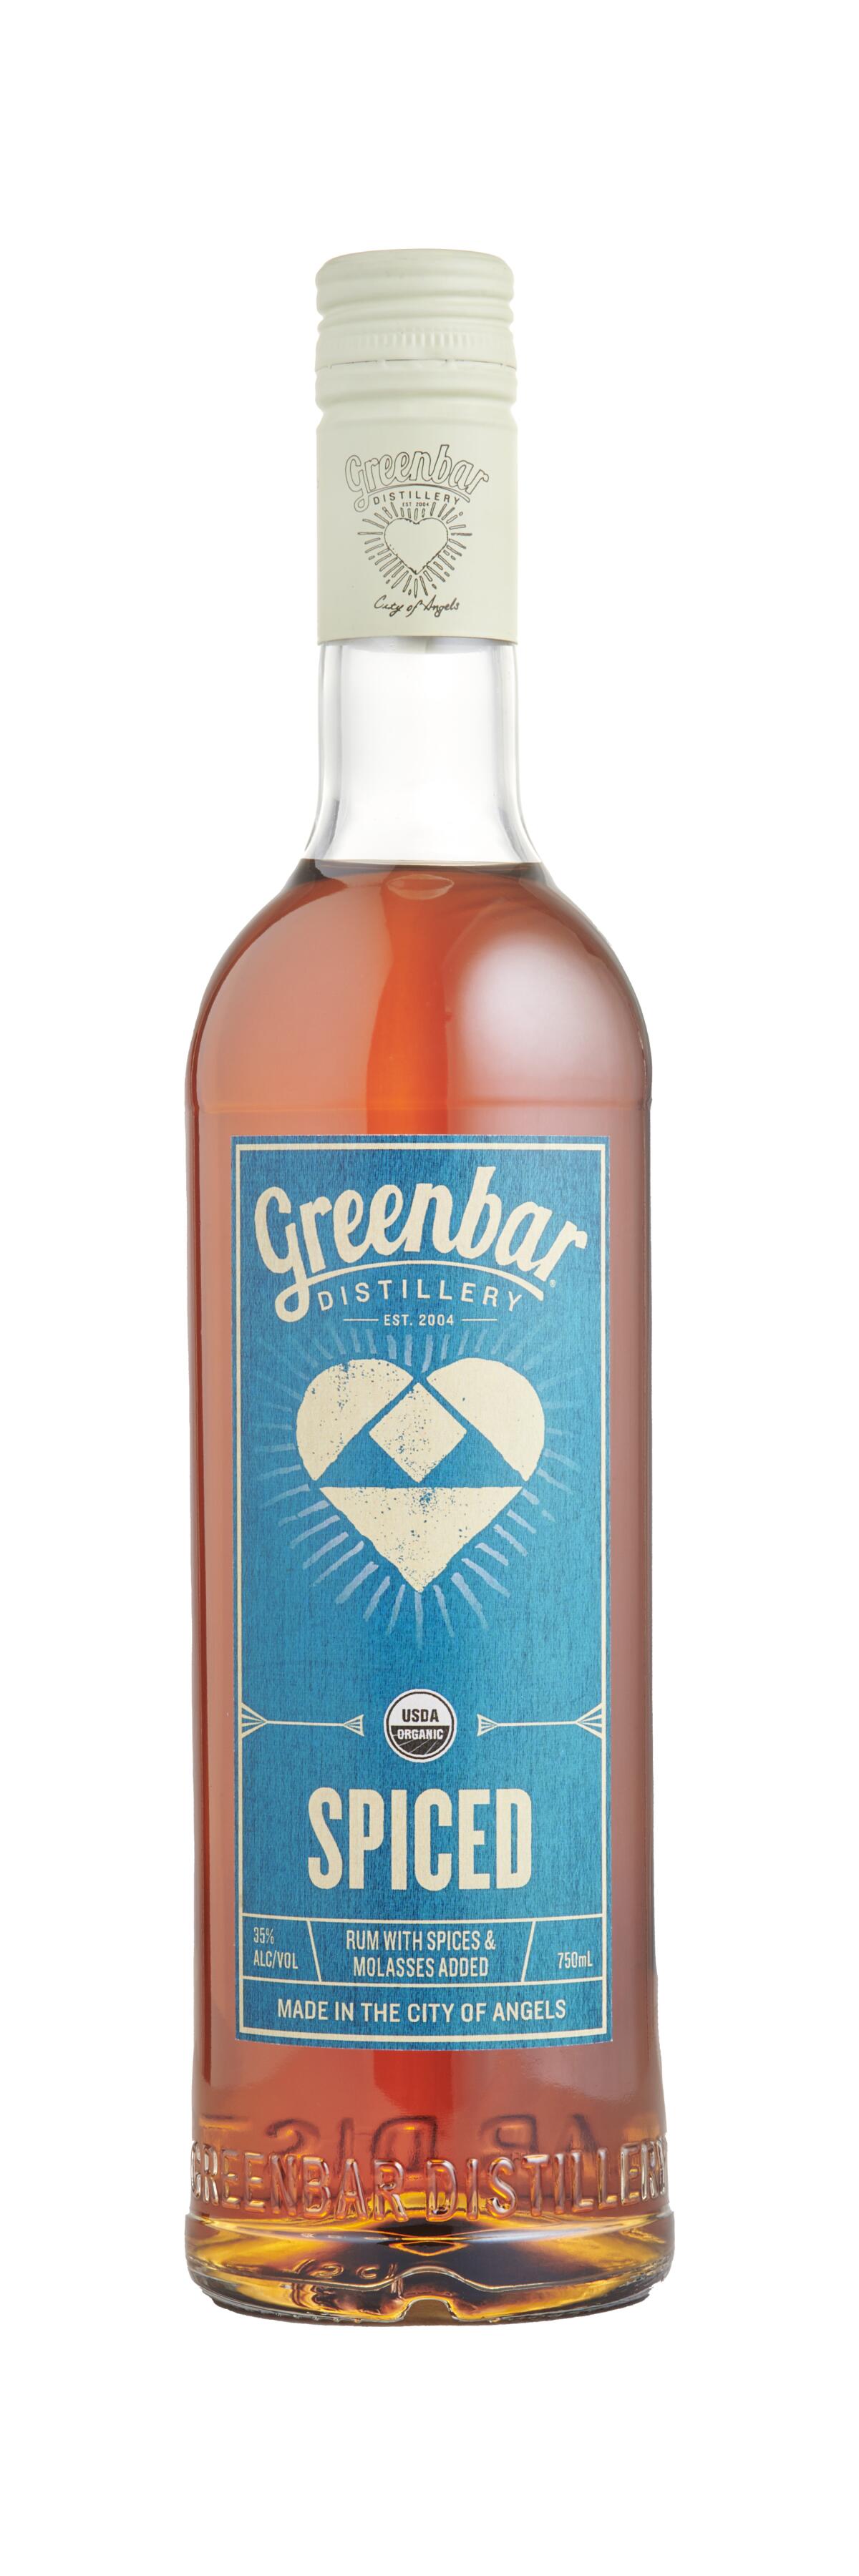 A bottle of Greenbar rum